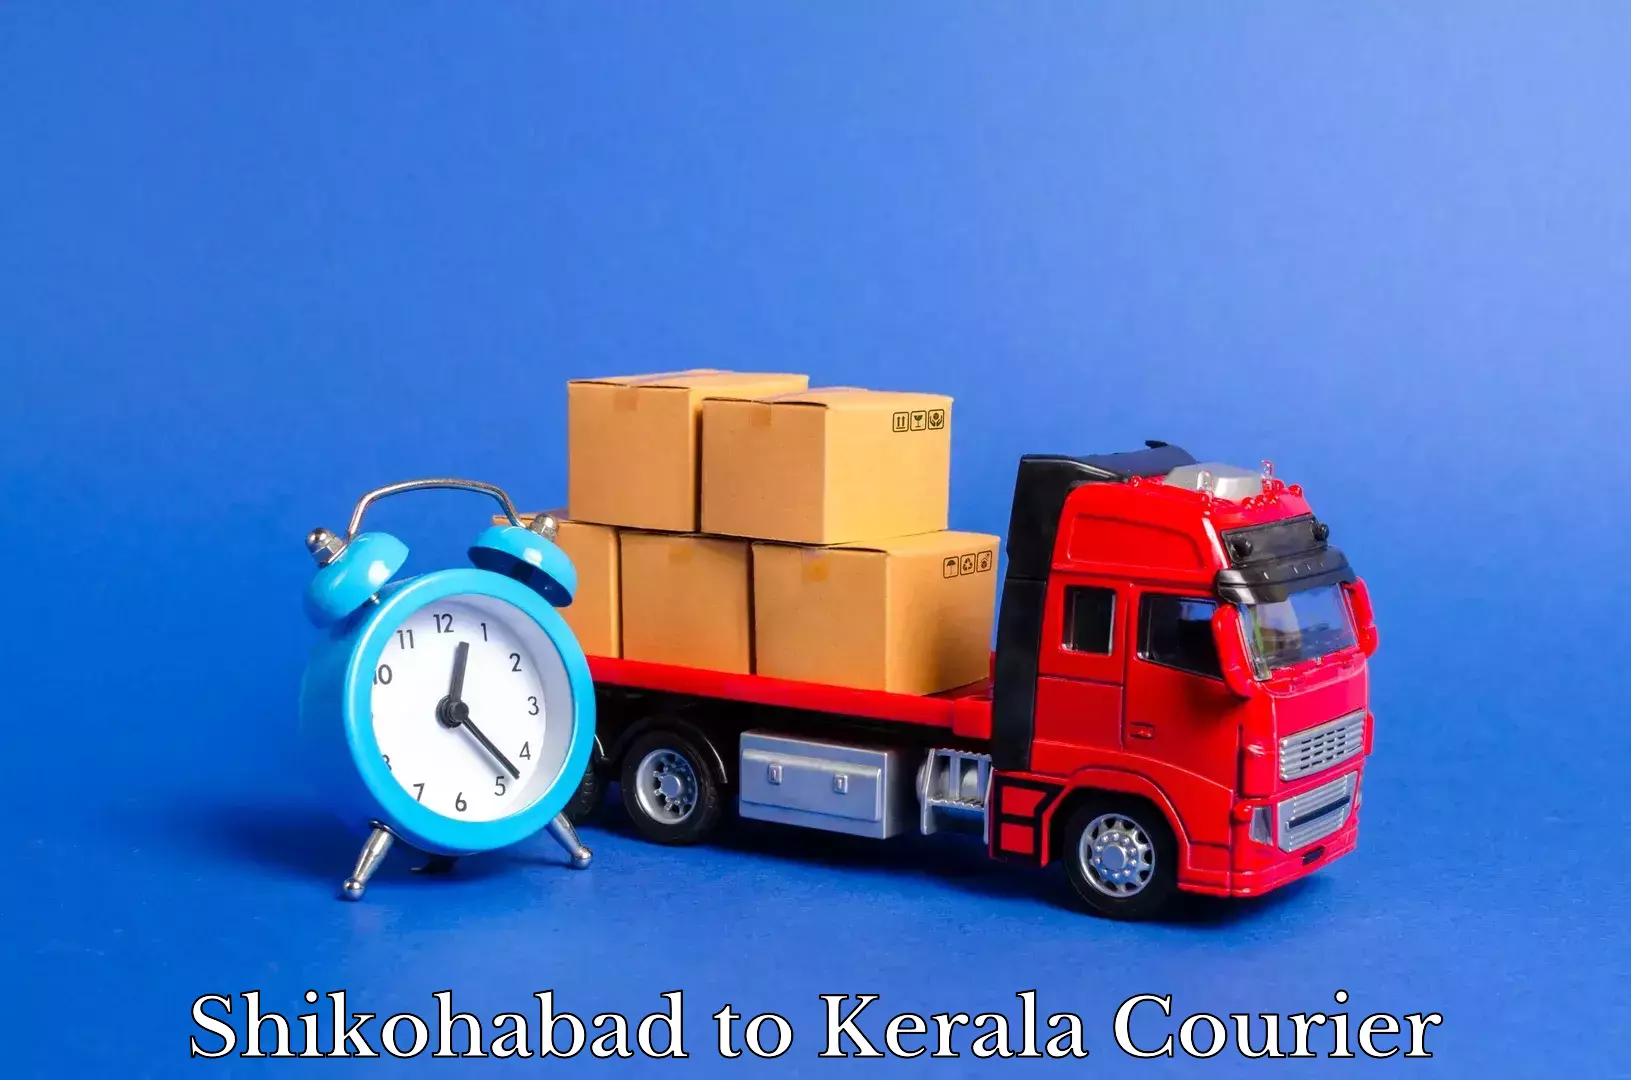 Furniture moving experts Shikohabad to Kakkayam